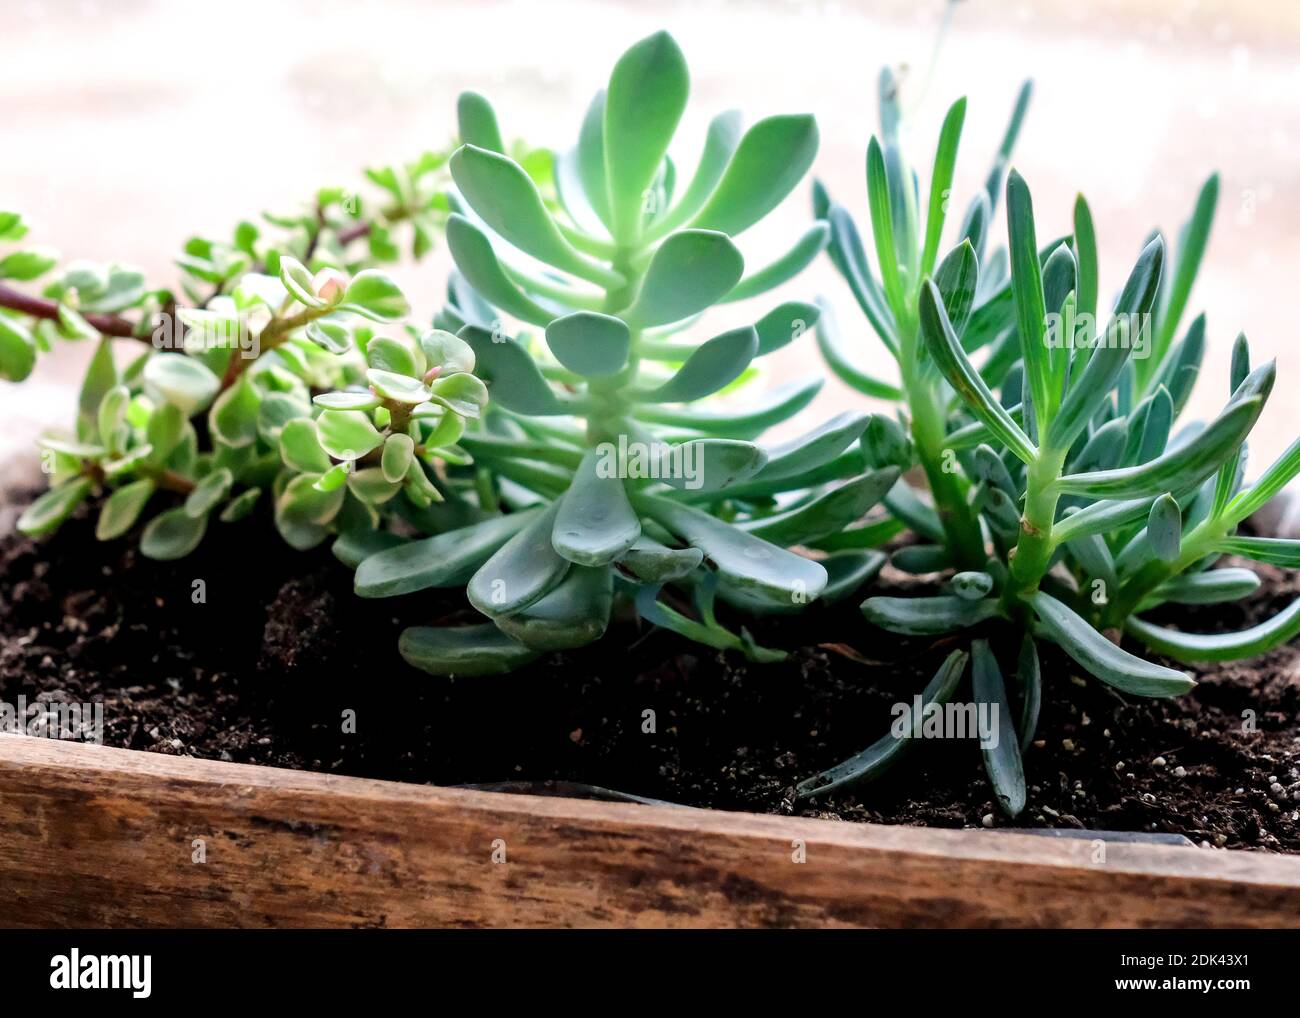 Verschiedene grüne Kakteen ohne Nadeln in einem Holztopf. Zimmerpflanzen, in der Nähe. Stockfoto